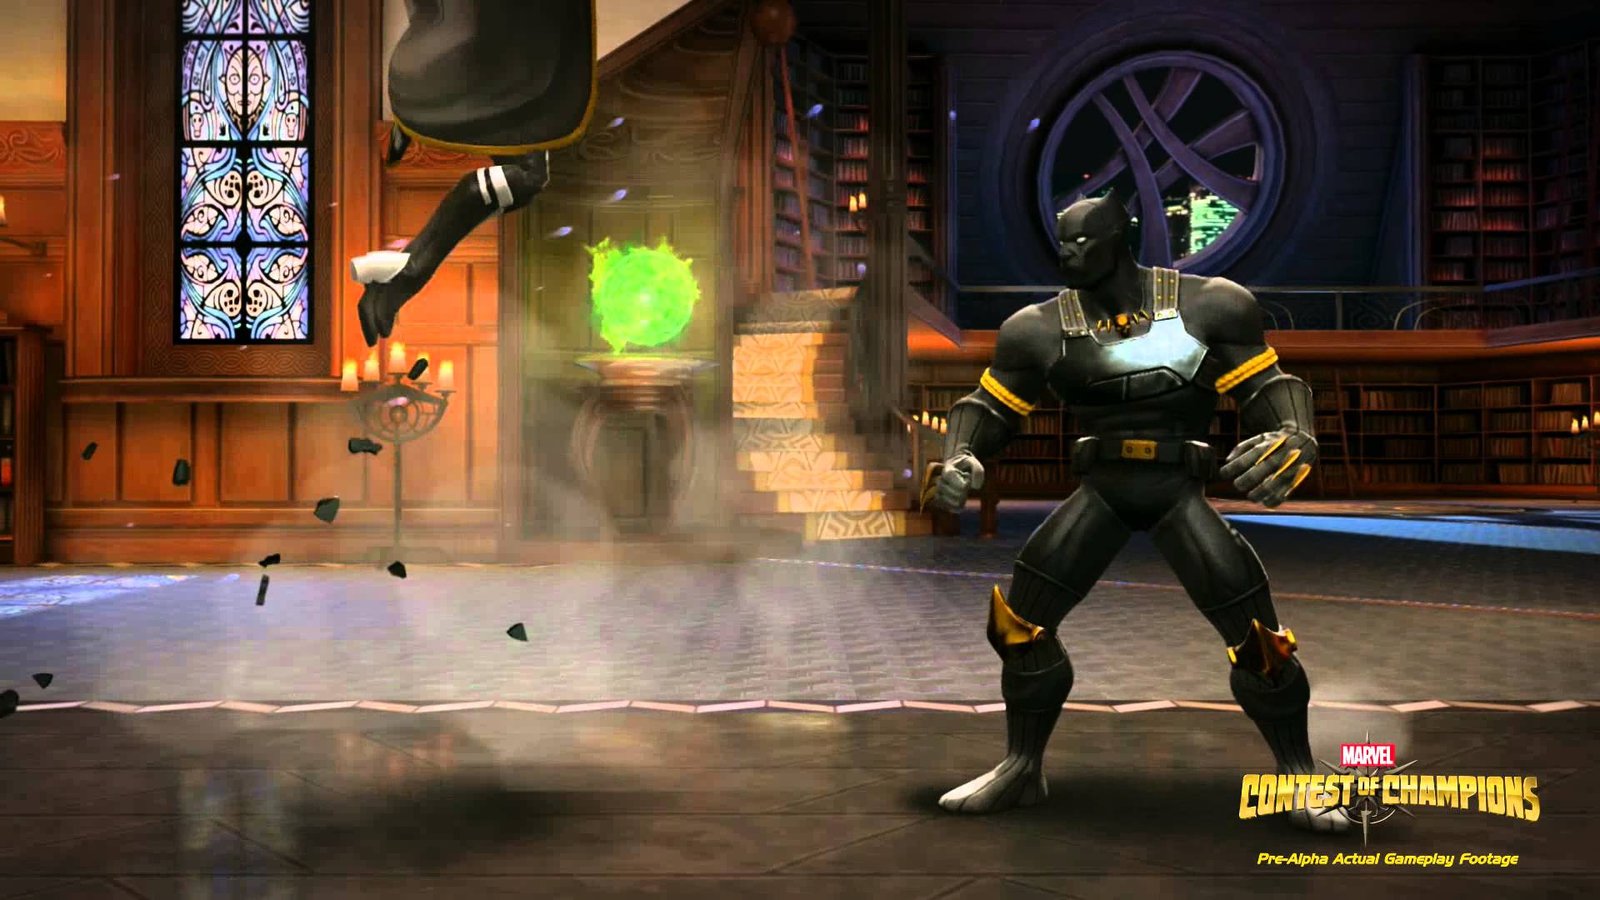 Contest of Champions : Marvel annonce un jeu de combat sur tablettes !